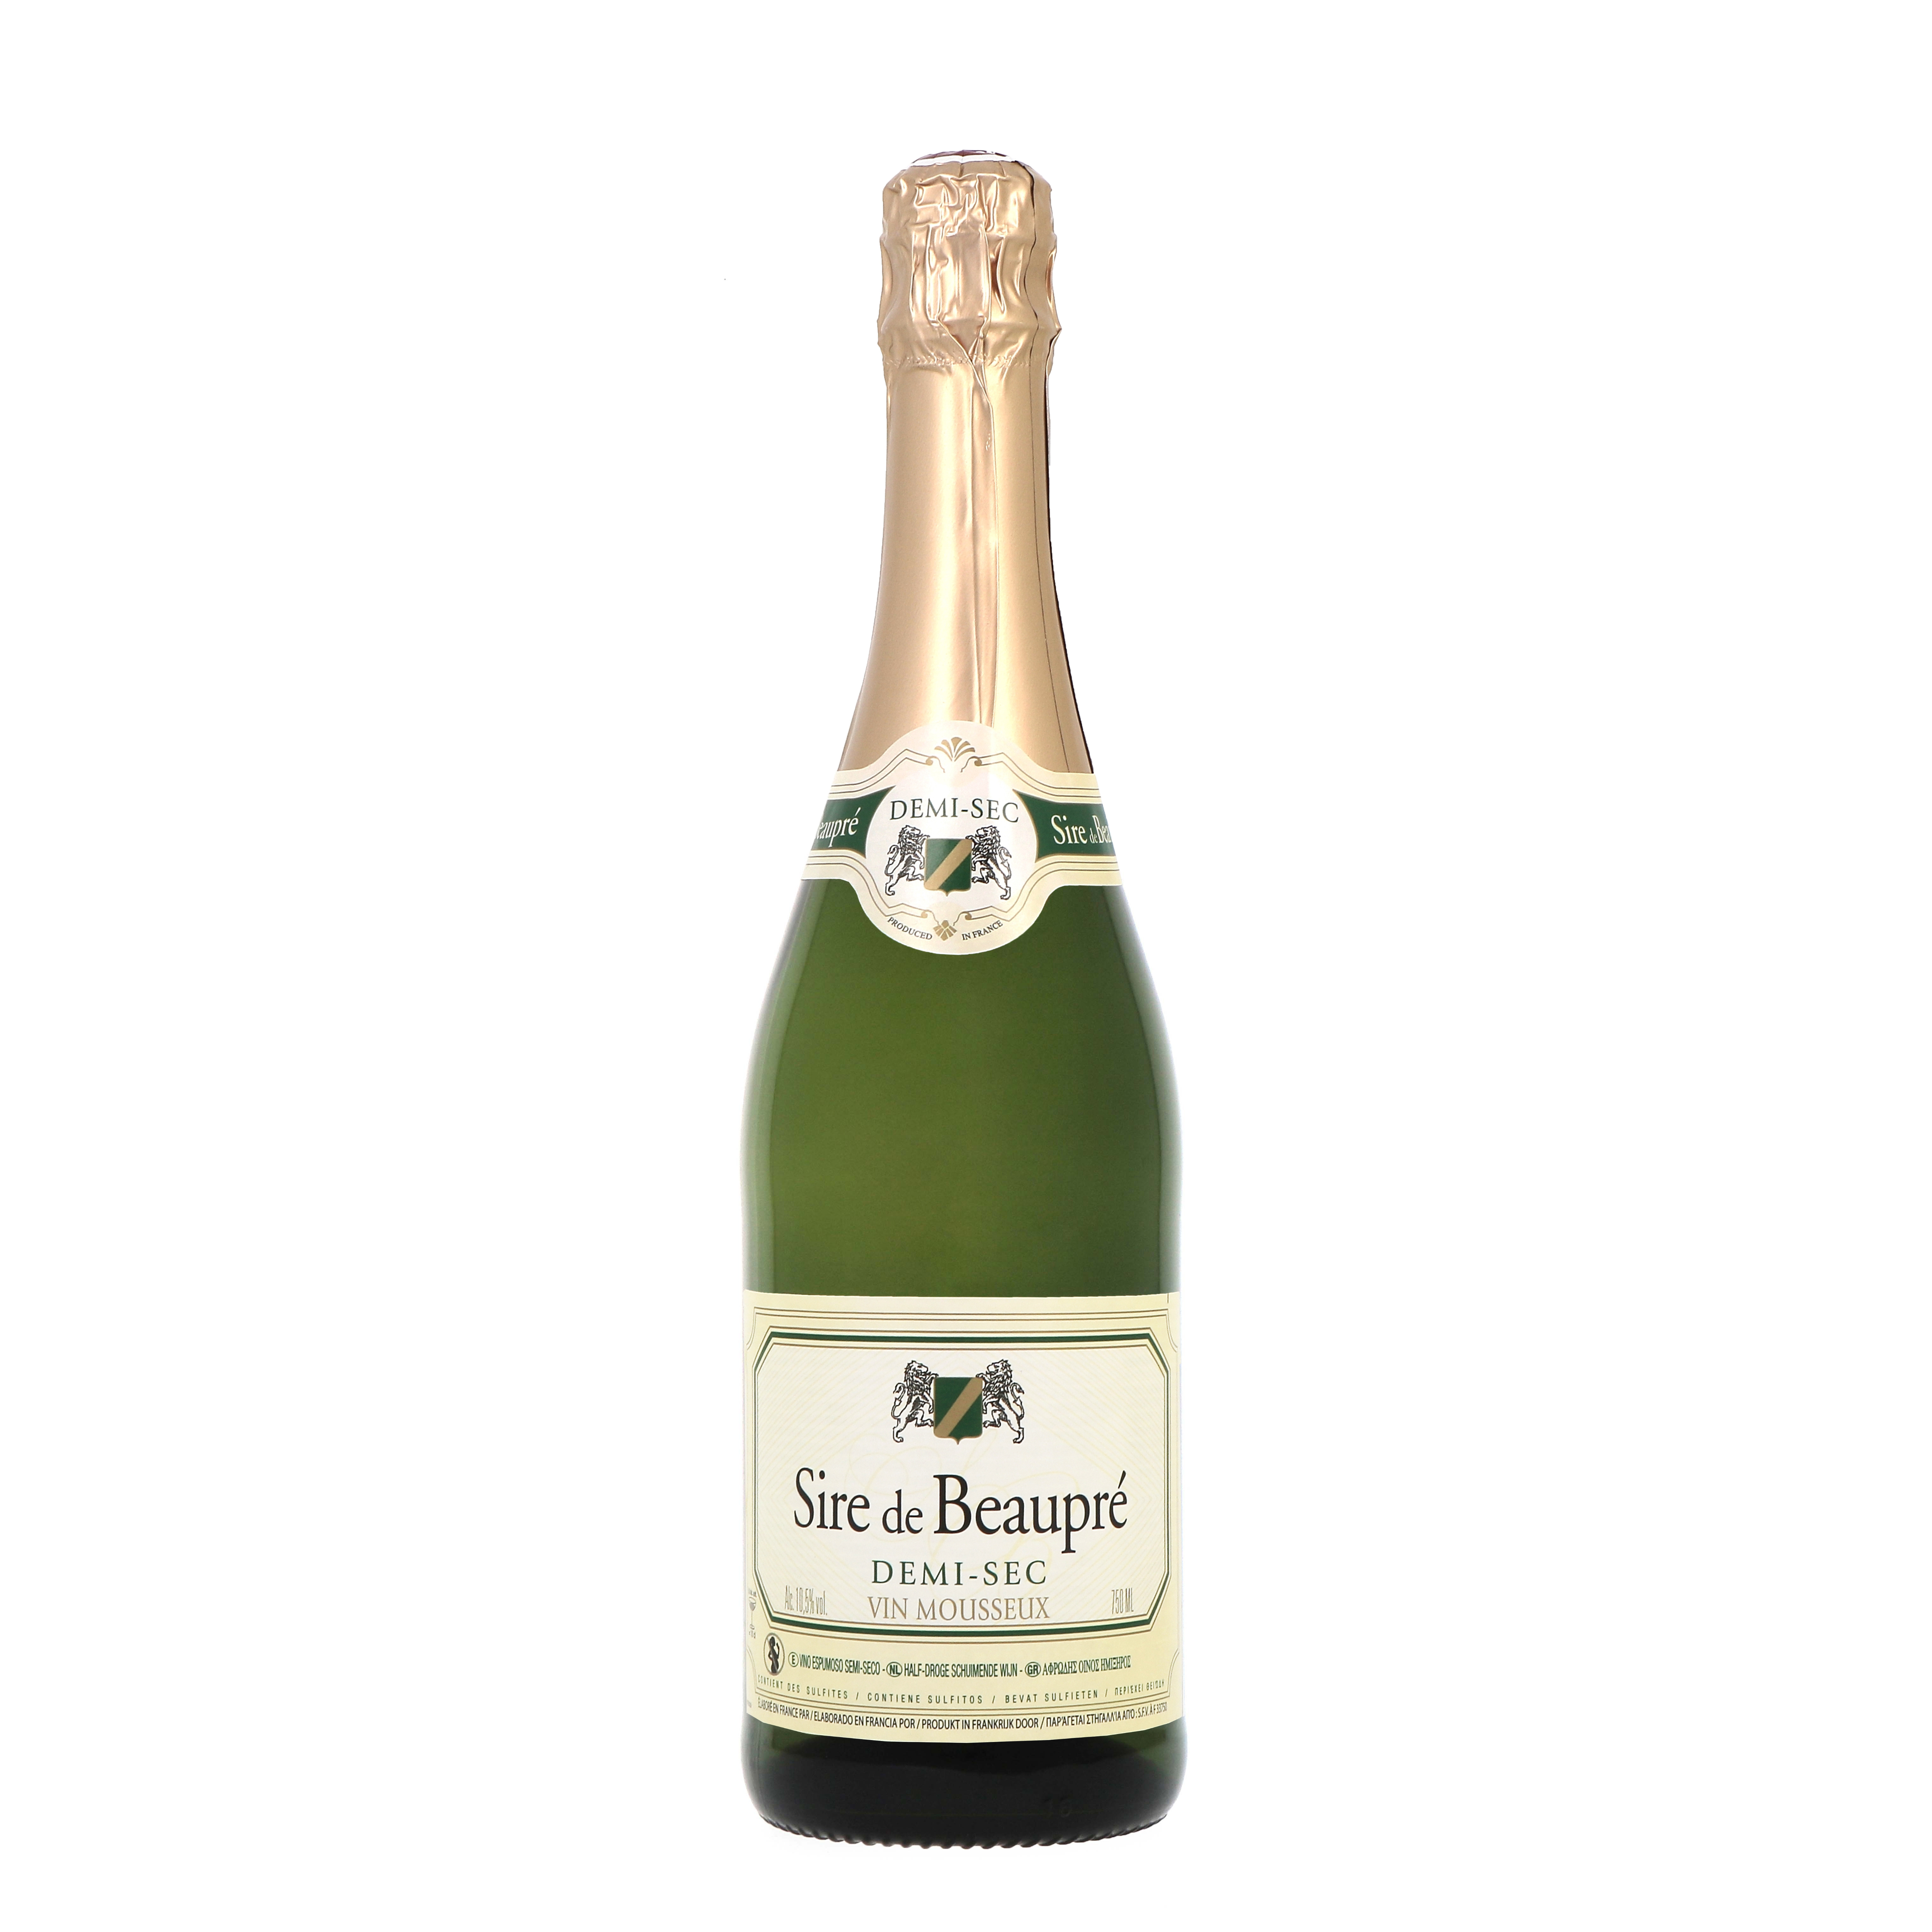 Sire de Beaupré - Vin mousseux demi-sec (750 ml)